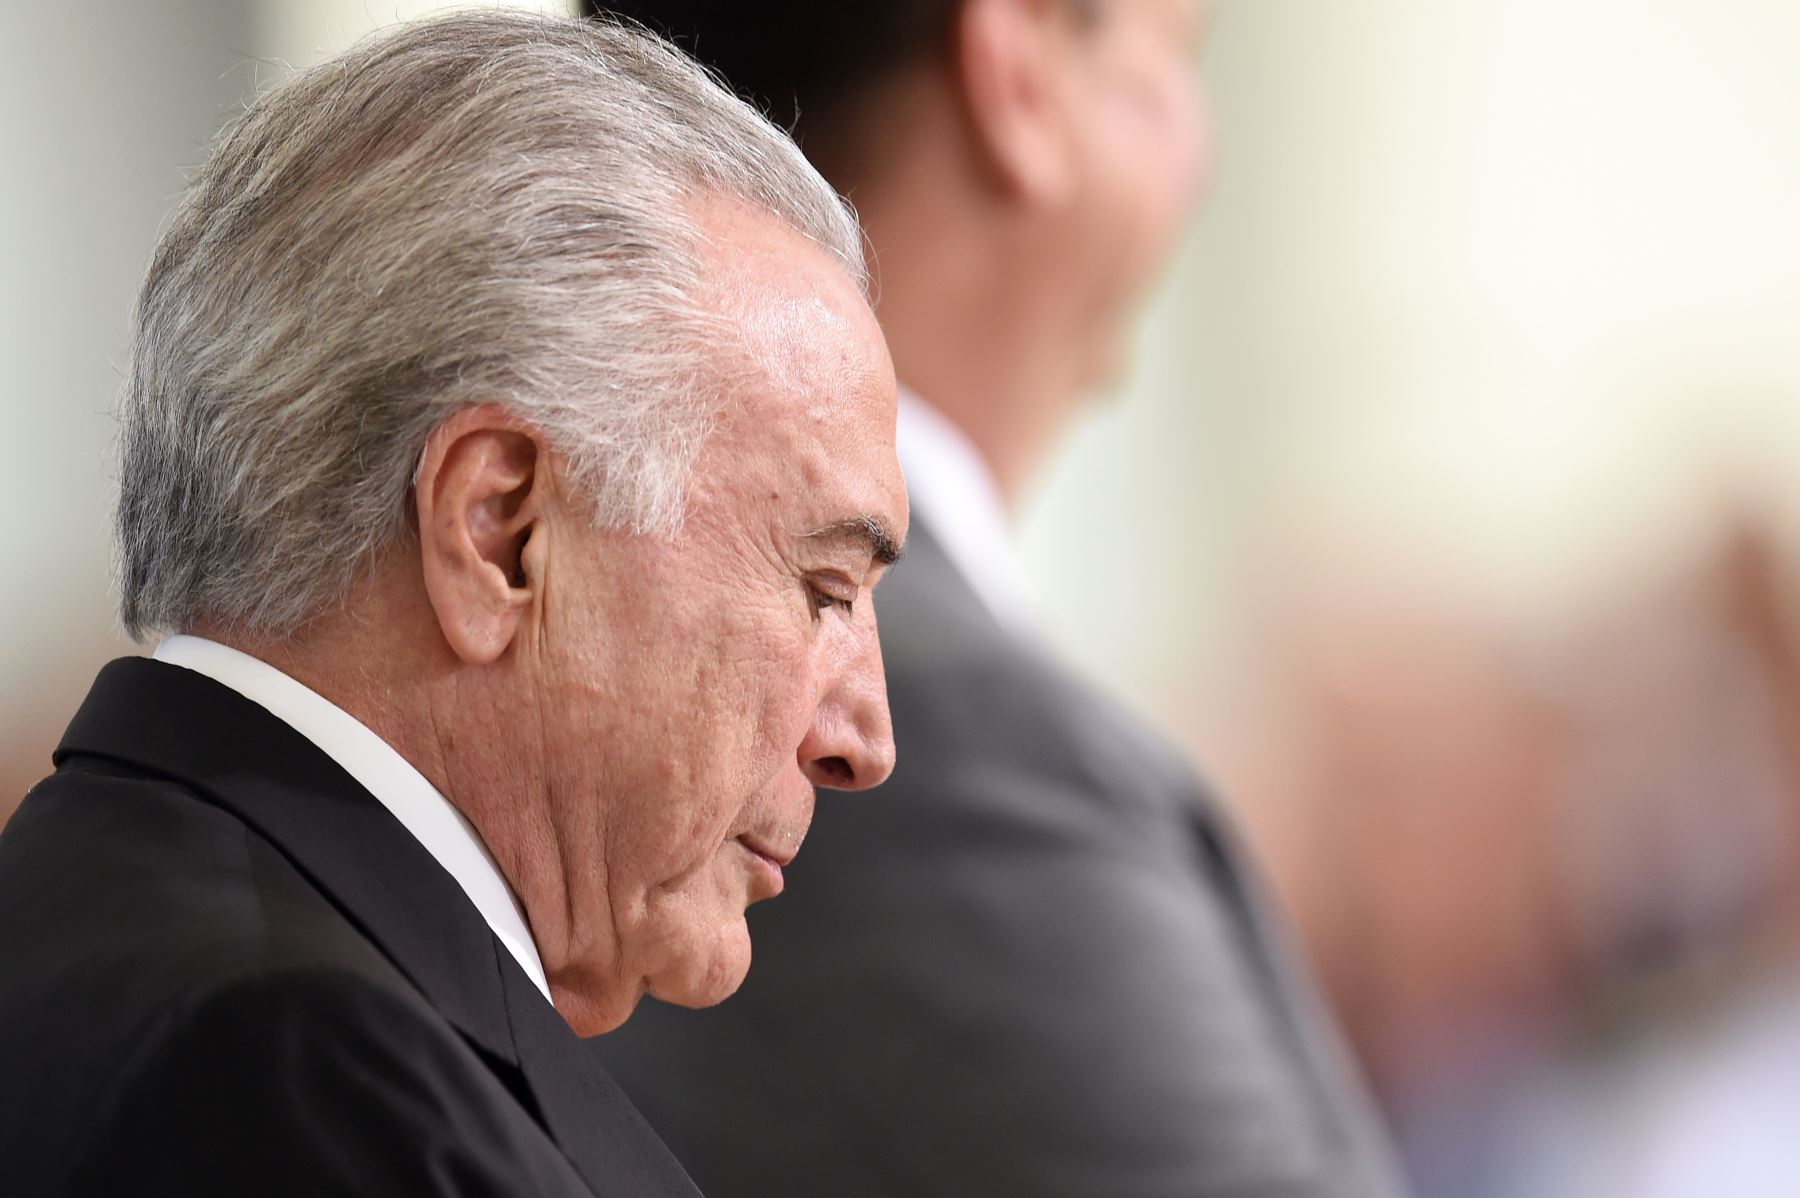 El expresidente conservador de Brasil Michel Temer (2016-2018) fue detenido este jueves por orden de un juez de la operación anticorrupción Lava Jato, informaron medios brasileños.
 Foto: AFP